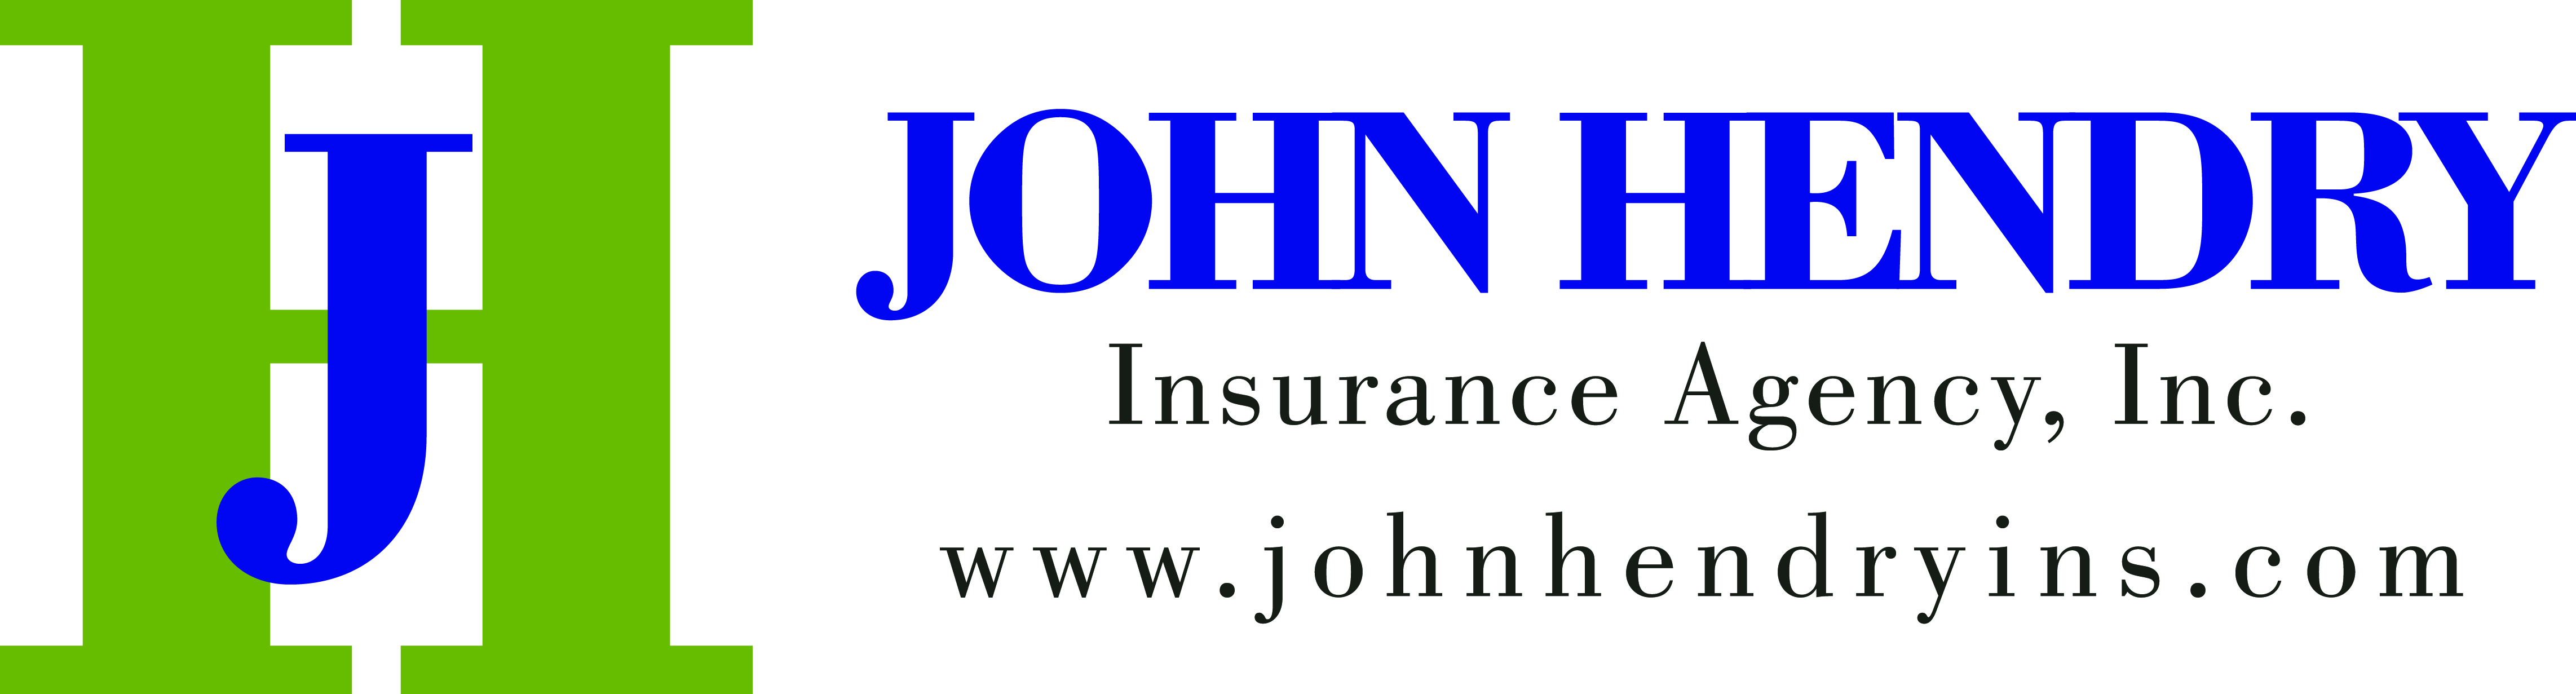 John Hendry Insurance Agency, Inc.